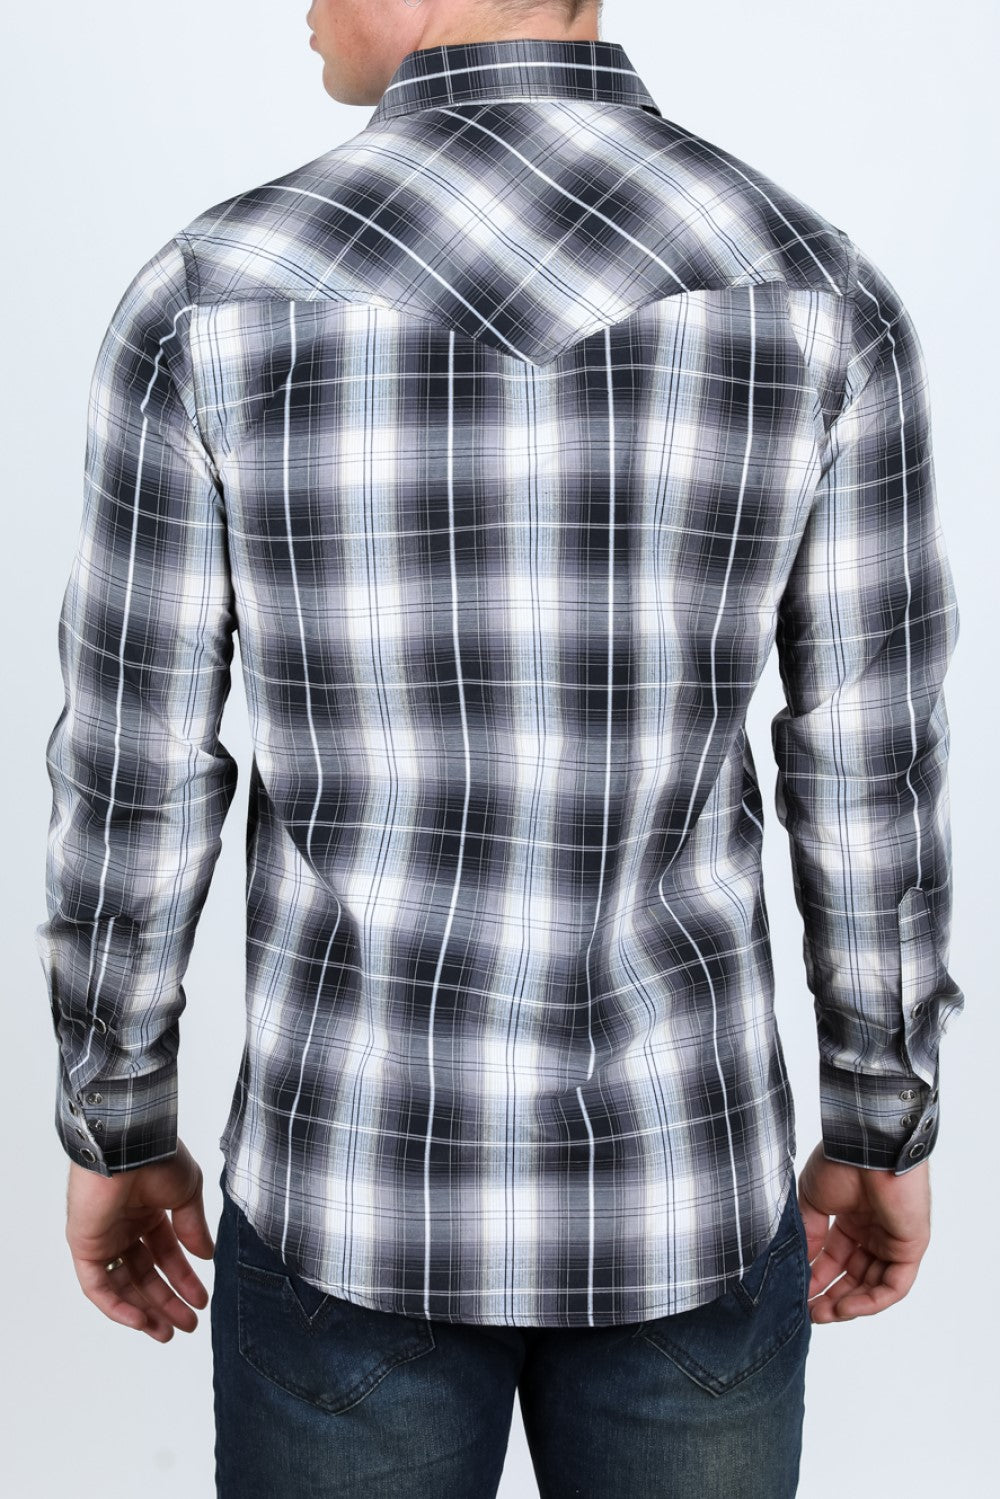 Cuadros MC-200-41 - Camisas Vaqueras de Manga Larga para Hombre - Camisas Vaqueras Negras (2)